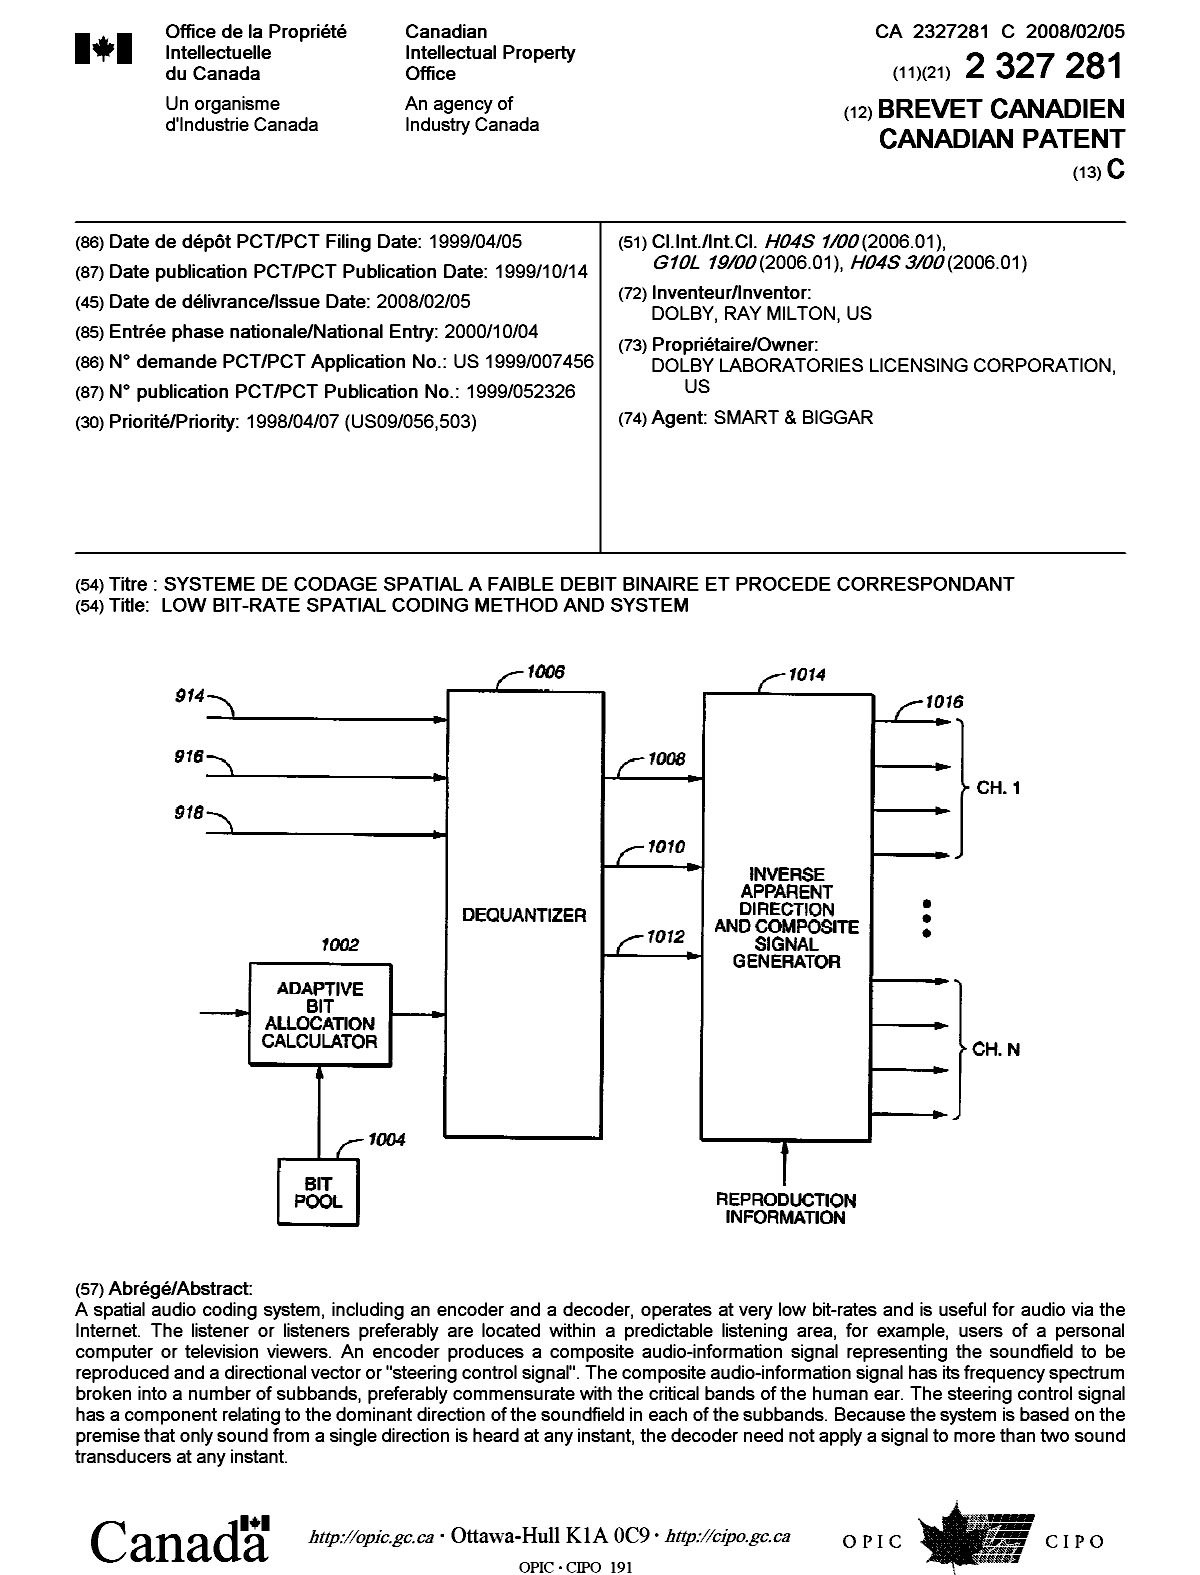 Document de brevet canadien 2327281. Page couverture 20080116. Image 1 de 1